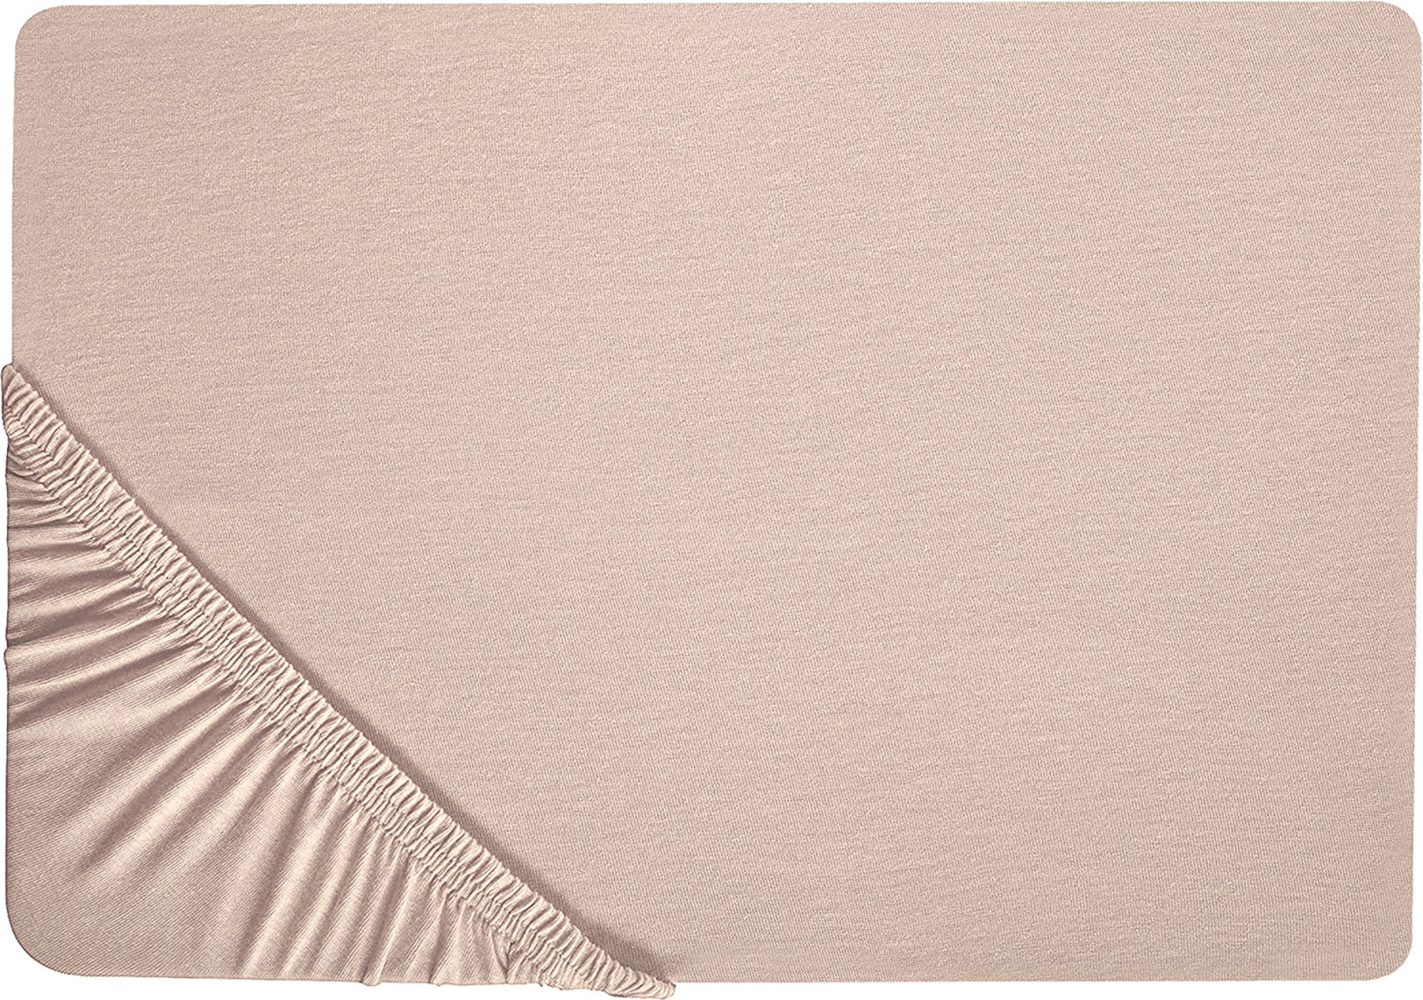 Spannbettlaken 'Hofuf' Beige Baumwolle mit Gummizug 140 x 200 cm Betttuch für Klassische Hohe Matratze Atmungsaktiv Schlafzimmer Bild 1